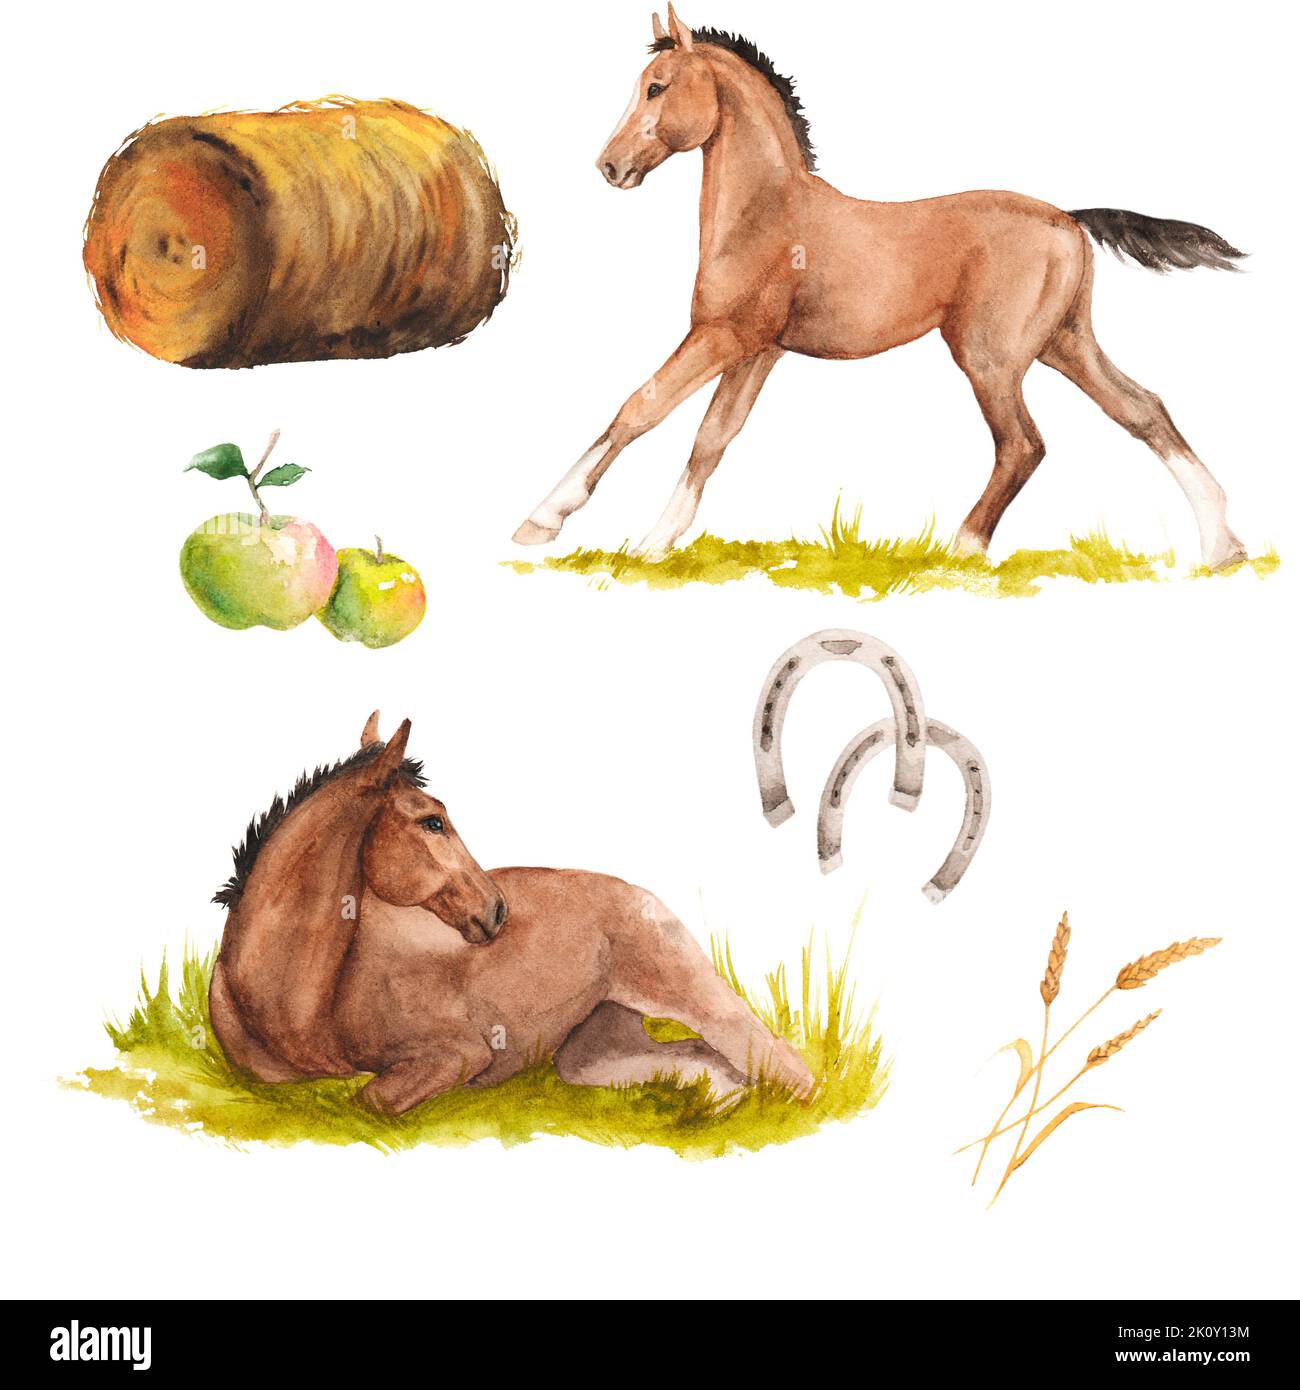 Illustration aquarelle de chevaux, fers à cheval, foin, pommes ensemble isolé Banque D'Images